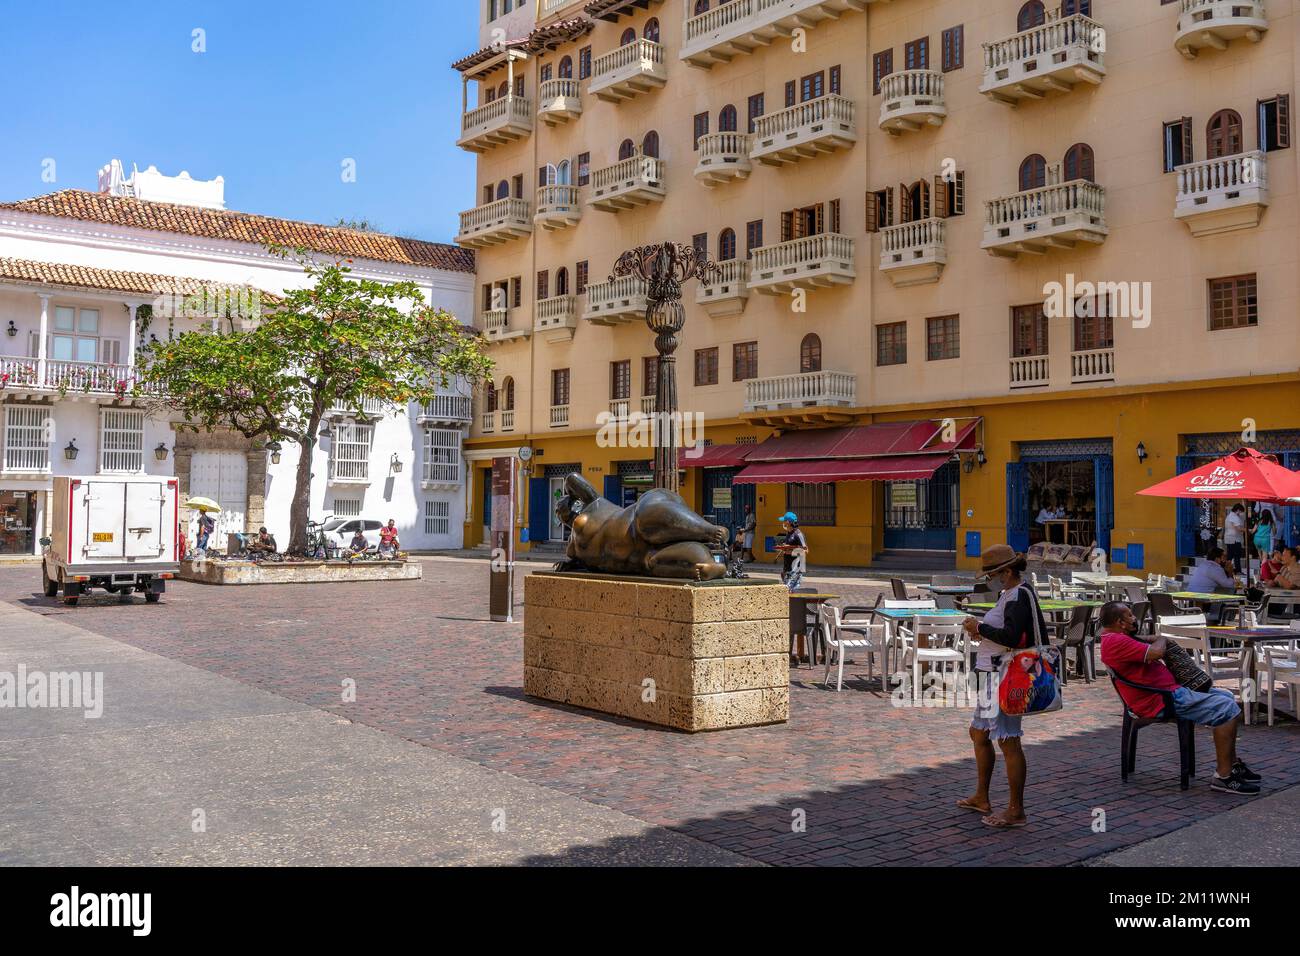 Südamerika, Kolumbien, Departamento de Bolívar, Cartagena de Indias, Ciudad Amurallada, Plaza Santo Domingo mit der berühmten Skulptur La Gorda Gertrudis von Botero Stockfoto